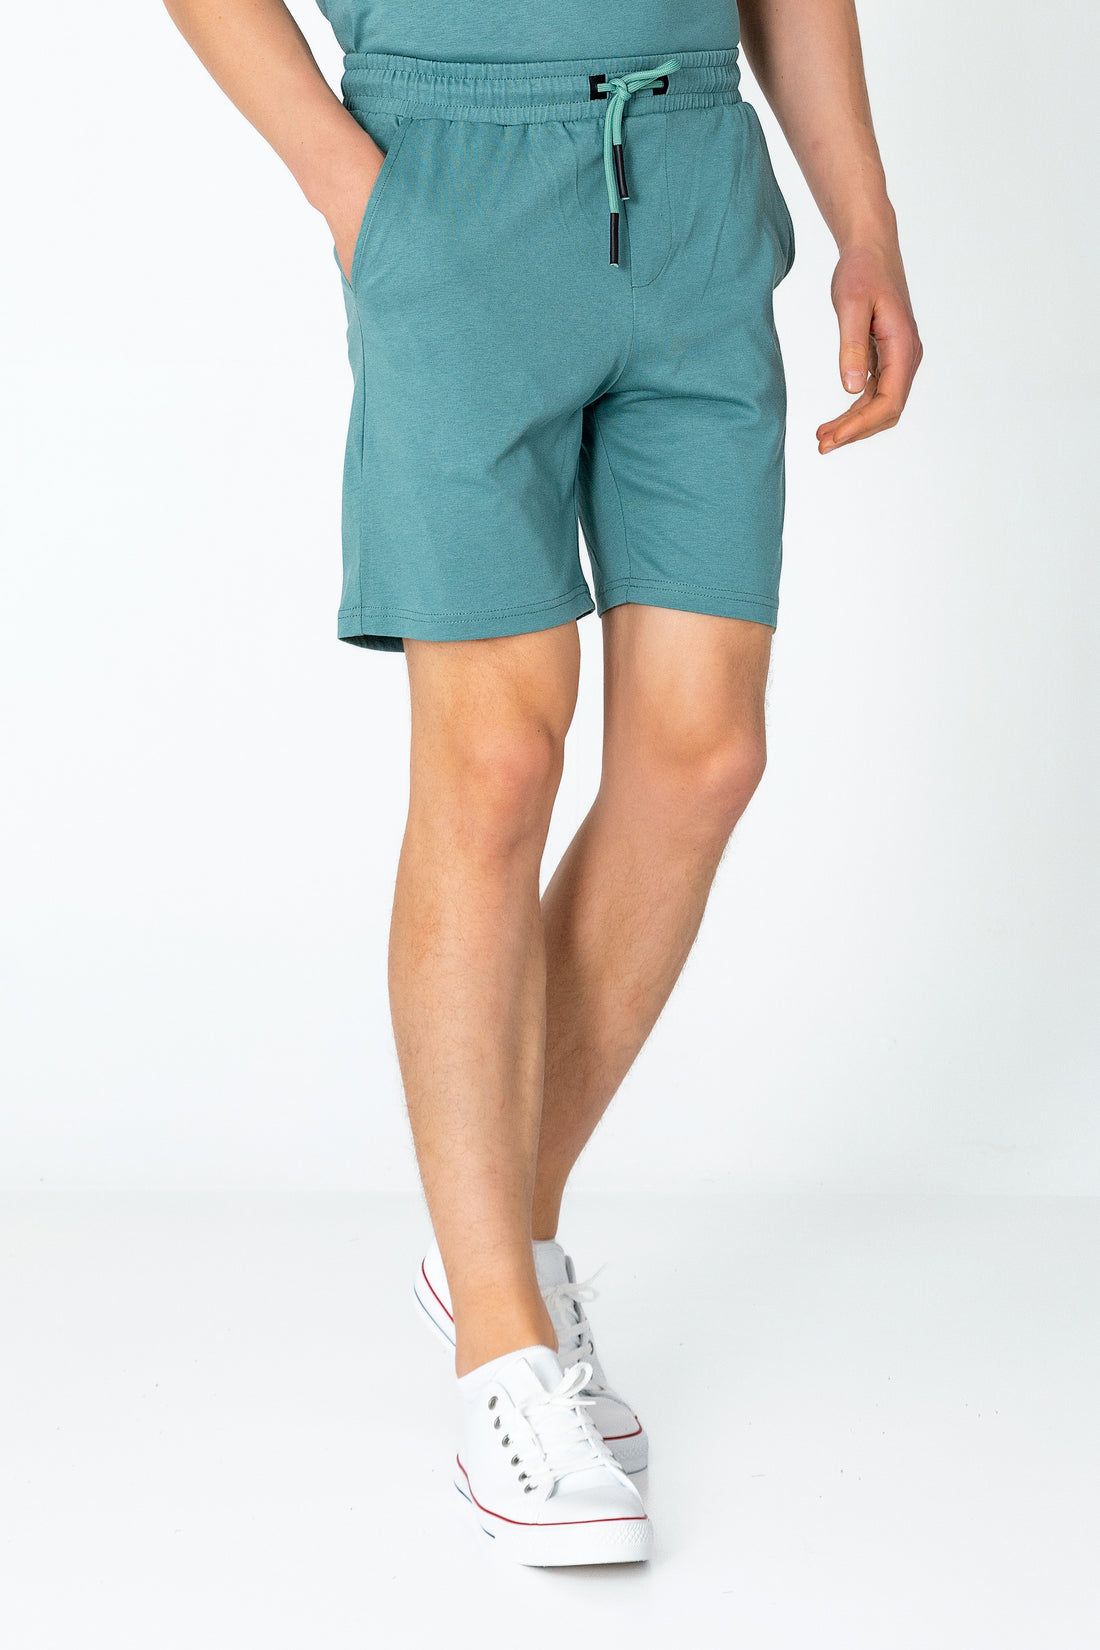 Lightweight Cotton Shorts - Teal Green